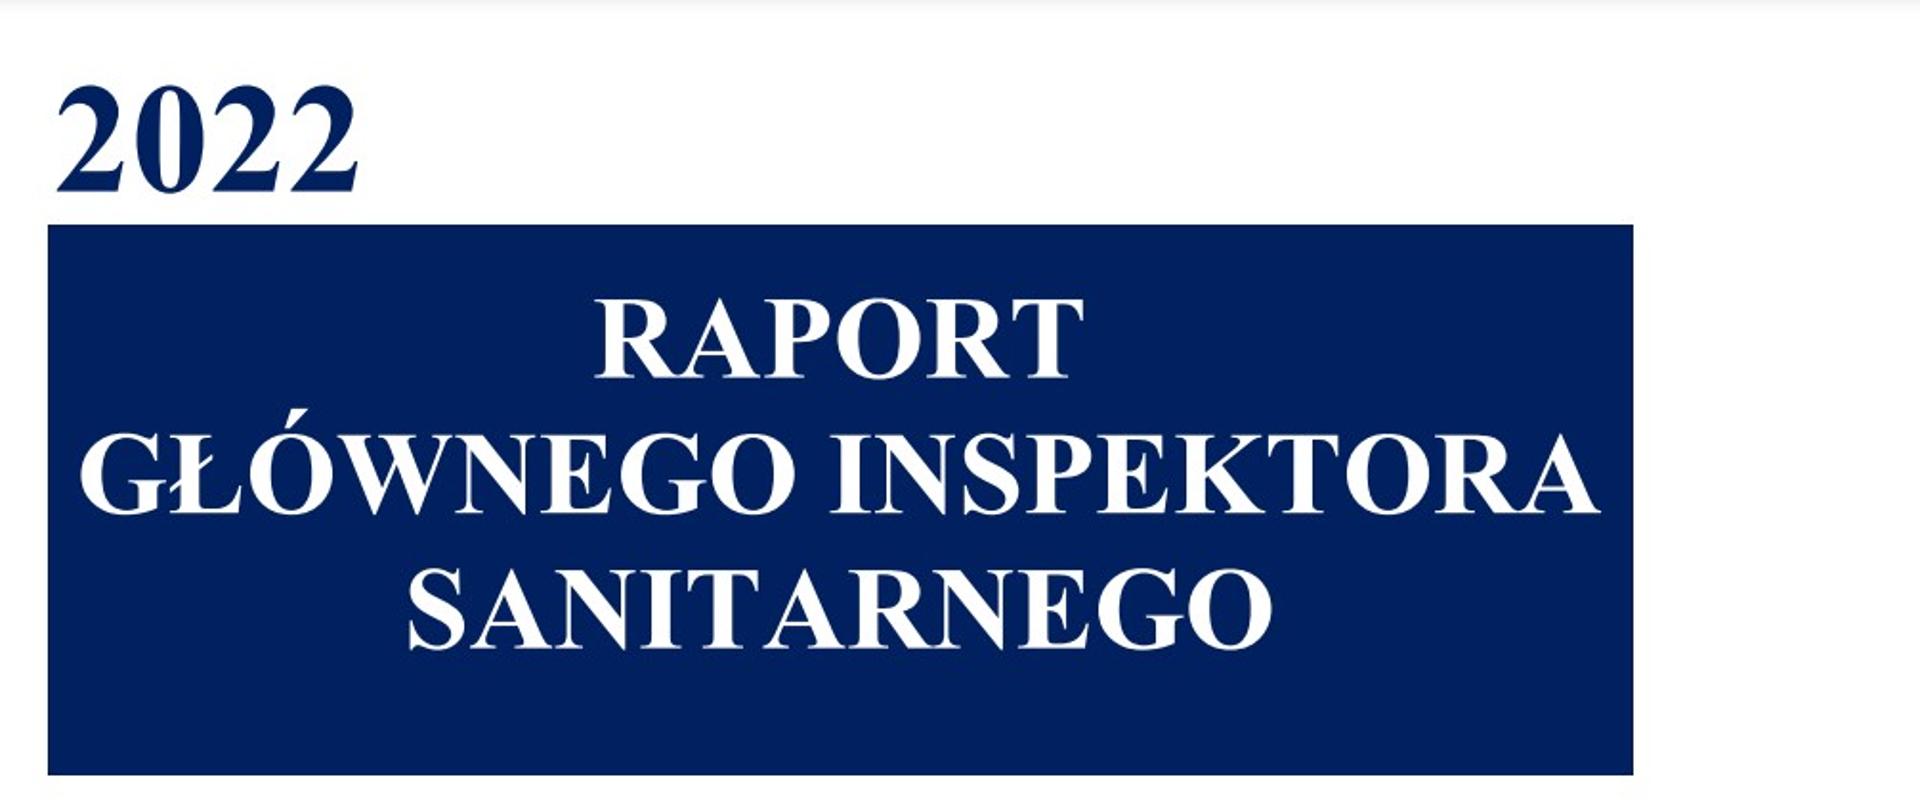 Biały napis na niebieskim tle: Raport Głównego Inspektora Sanitarnego za 2022